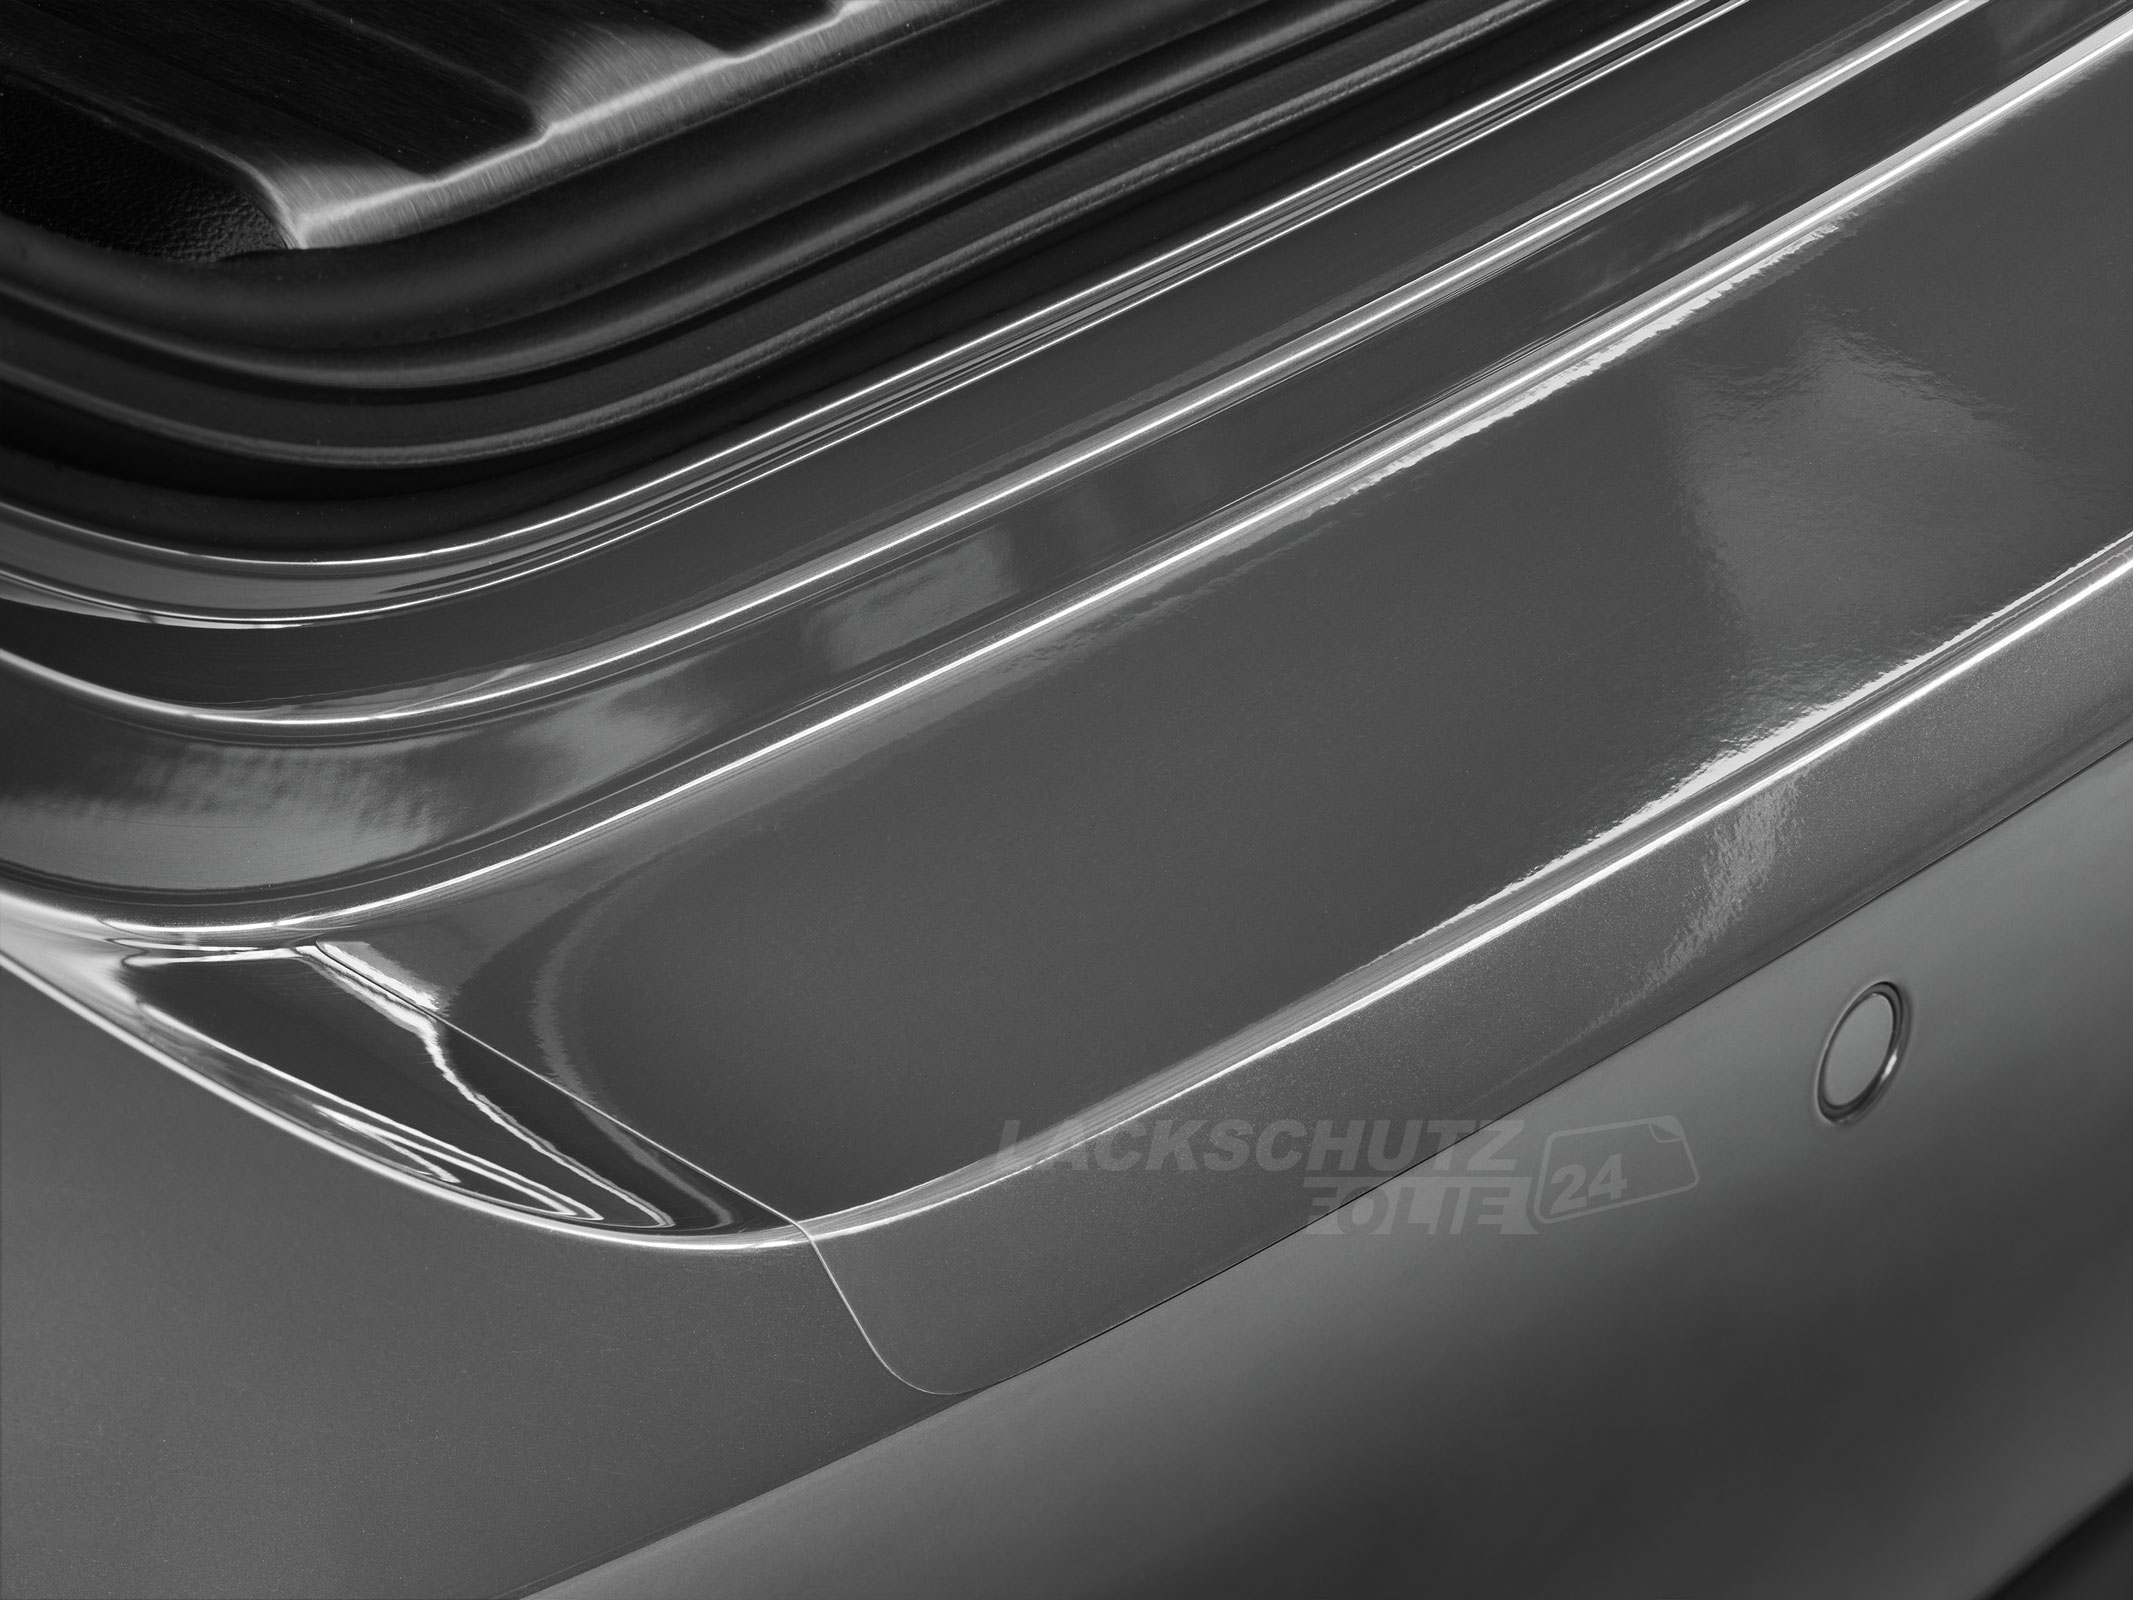 Ladekantenschutzfolie - Transparent Glatt Hochglänzend 240 µm stark für Volvo S40 Limousine (II) ab BJ 2012